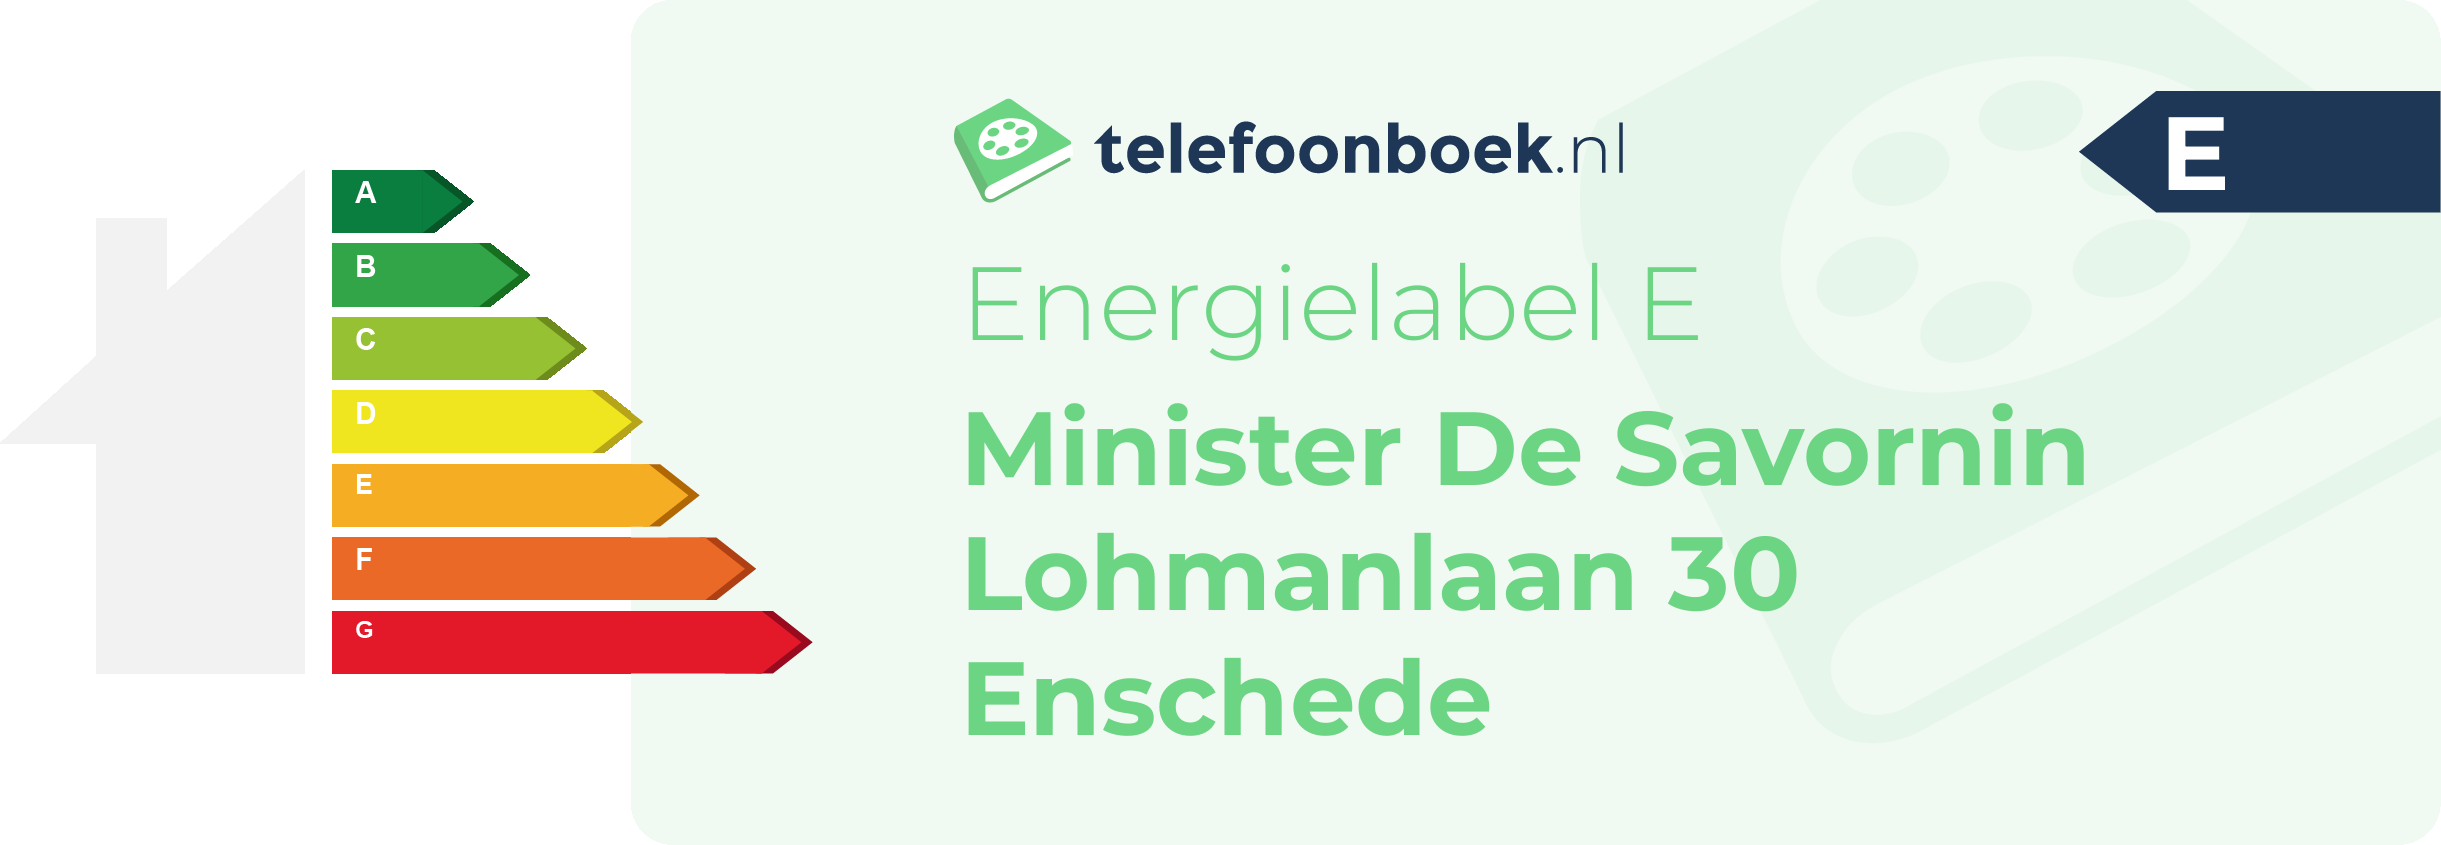 Energielabel Minister De Savornin Lohmanlaan 30 Enschede